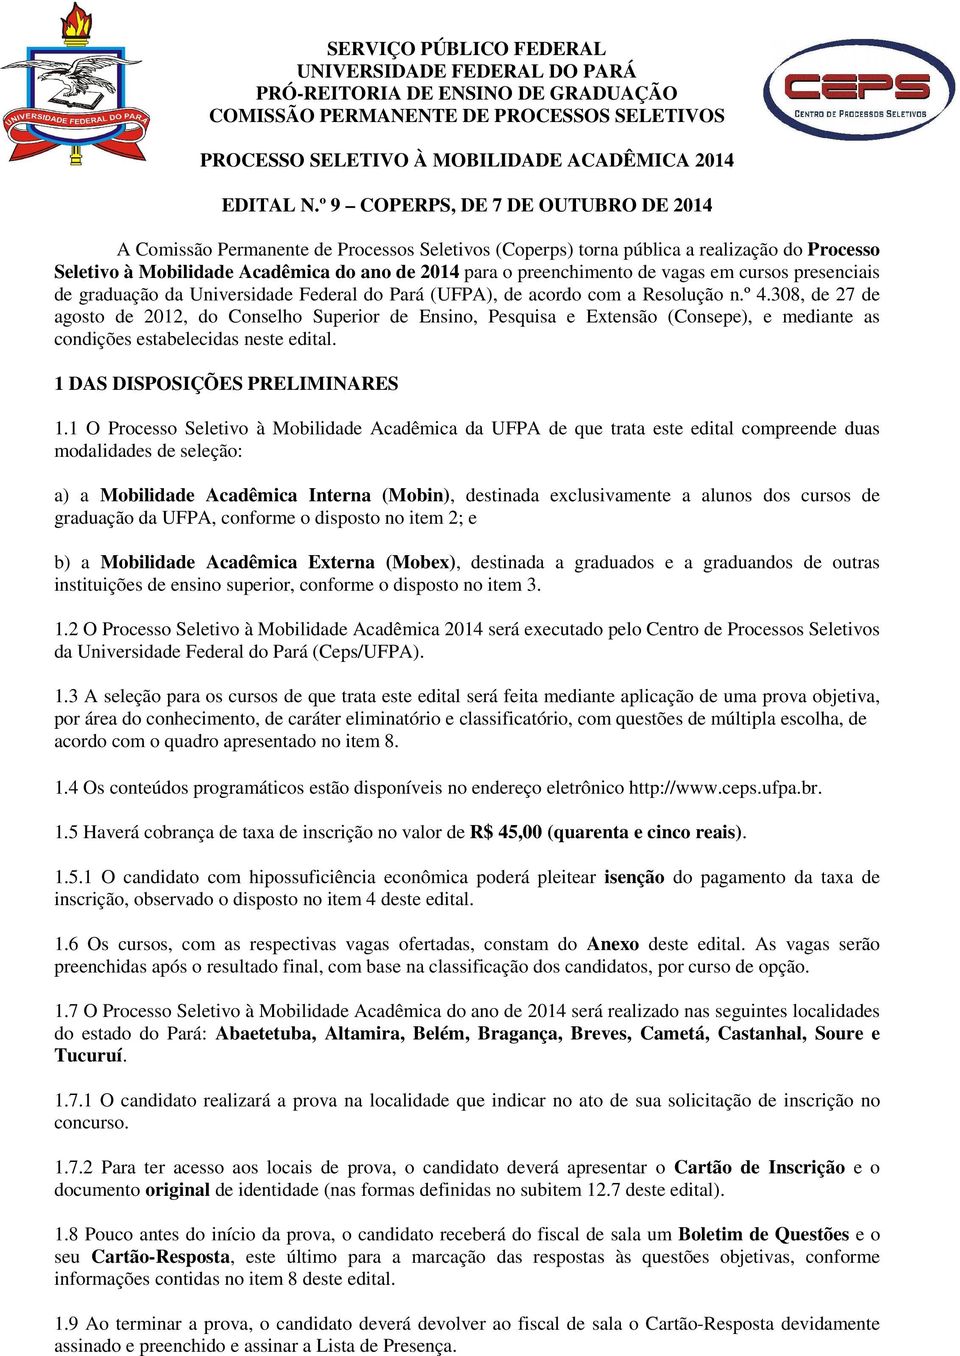 de vagas em cursos presenciais de graduação da Universidade Federal do Pará (UFPA), de acordo com a Resolução n.º 4.